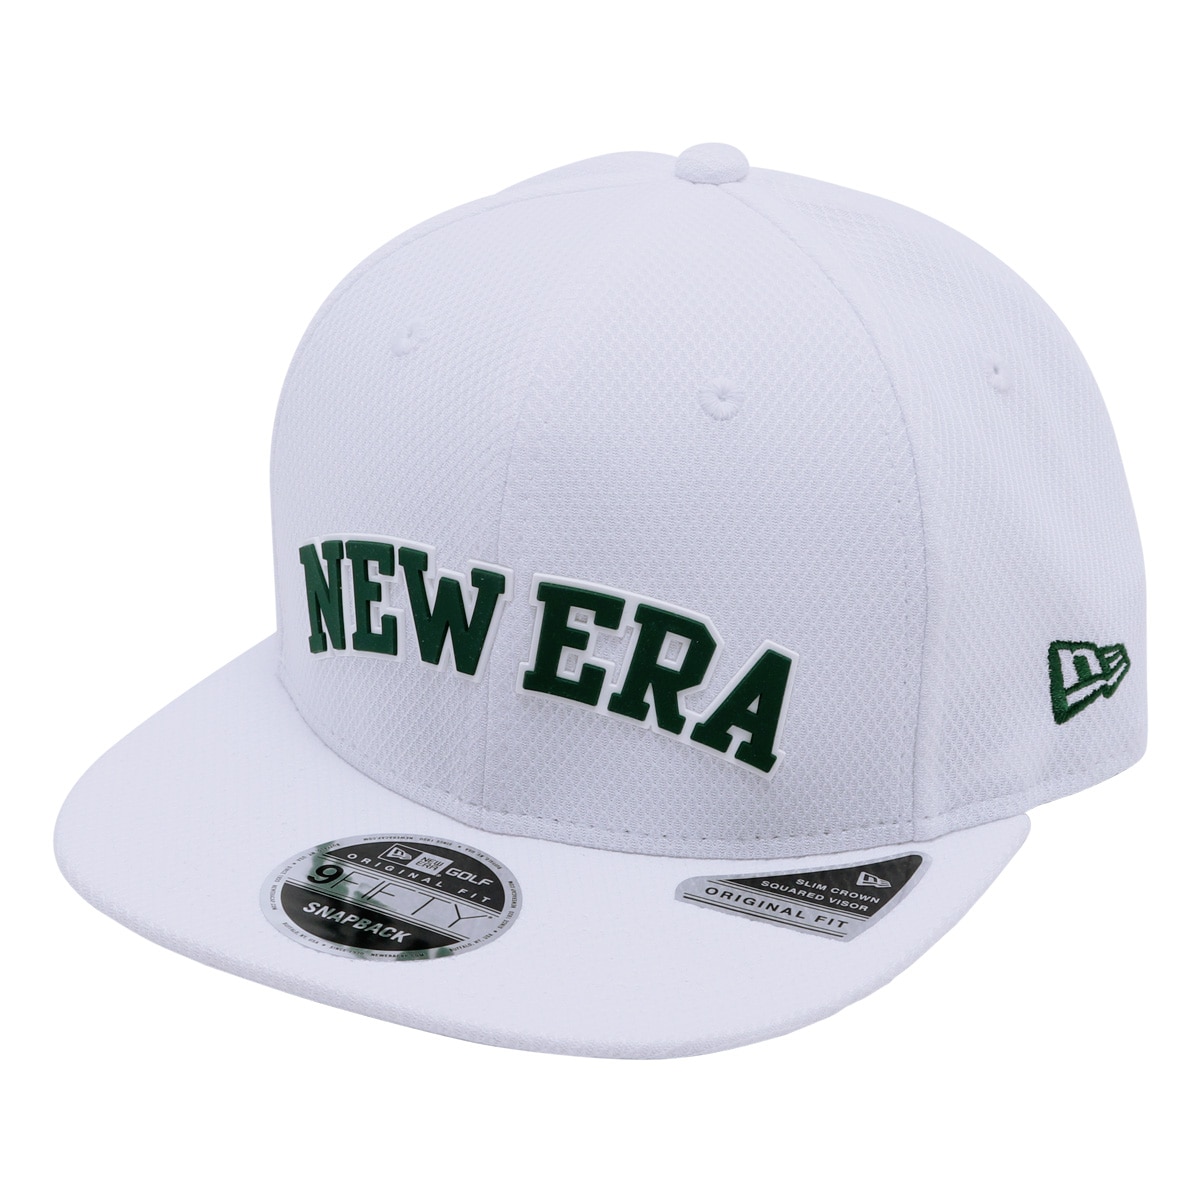 ニューエラ ゴルフ キャップ ダイアモンドエラ アーチロゴ 9FIFTY Original Fit Diamond Era メンズ レディース NEW  ERA 帽子 サイズ調整可能